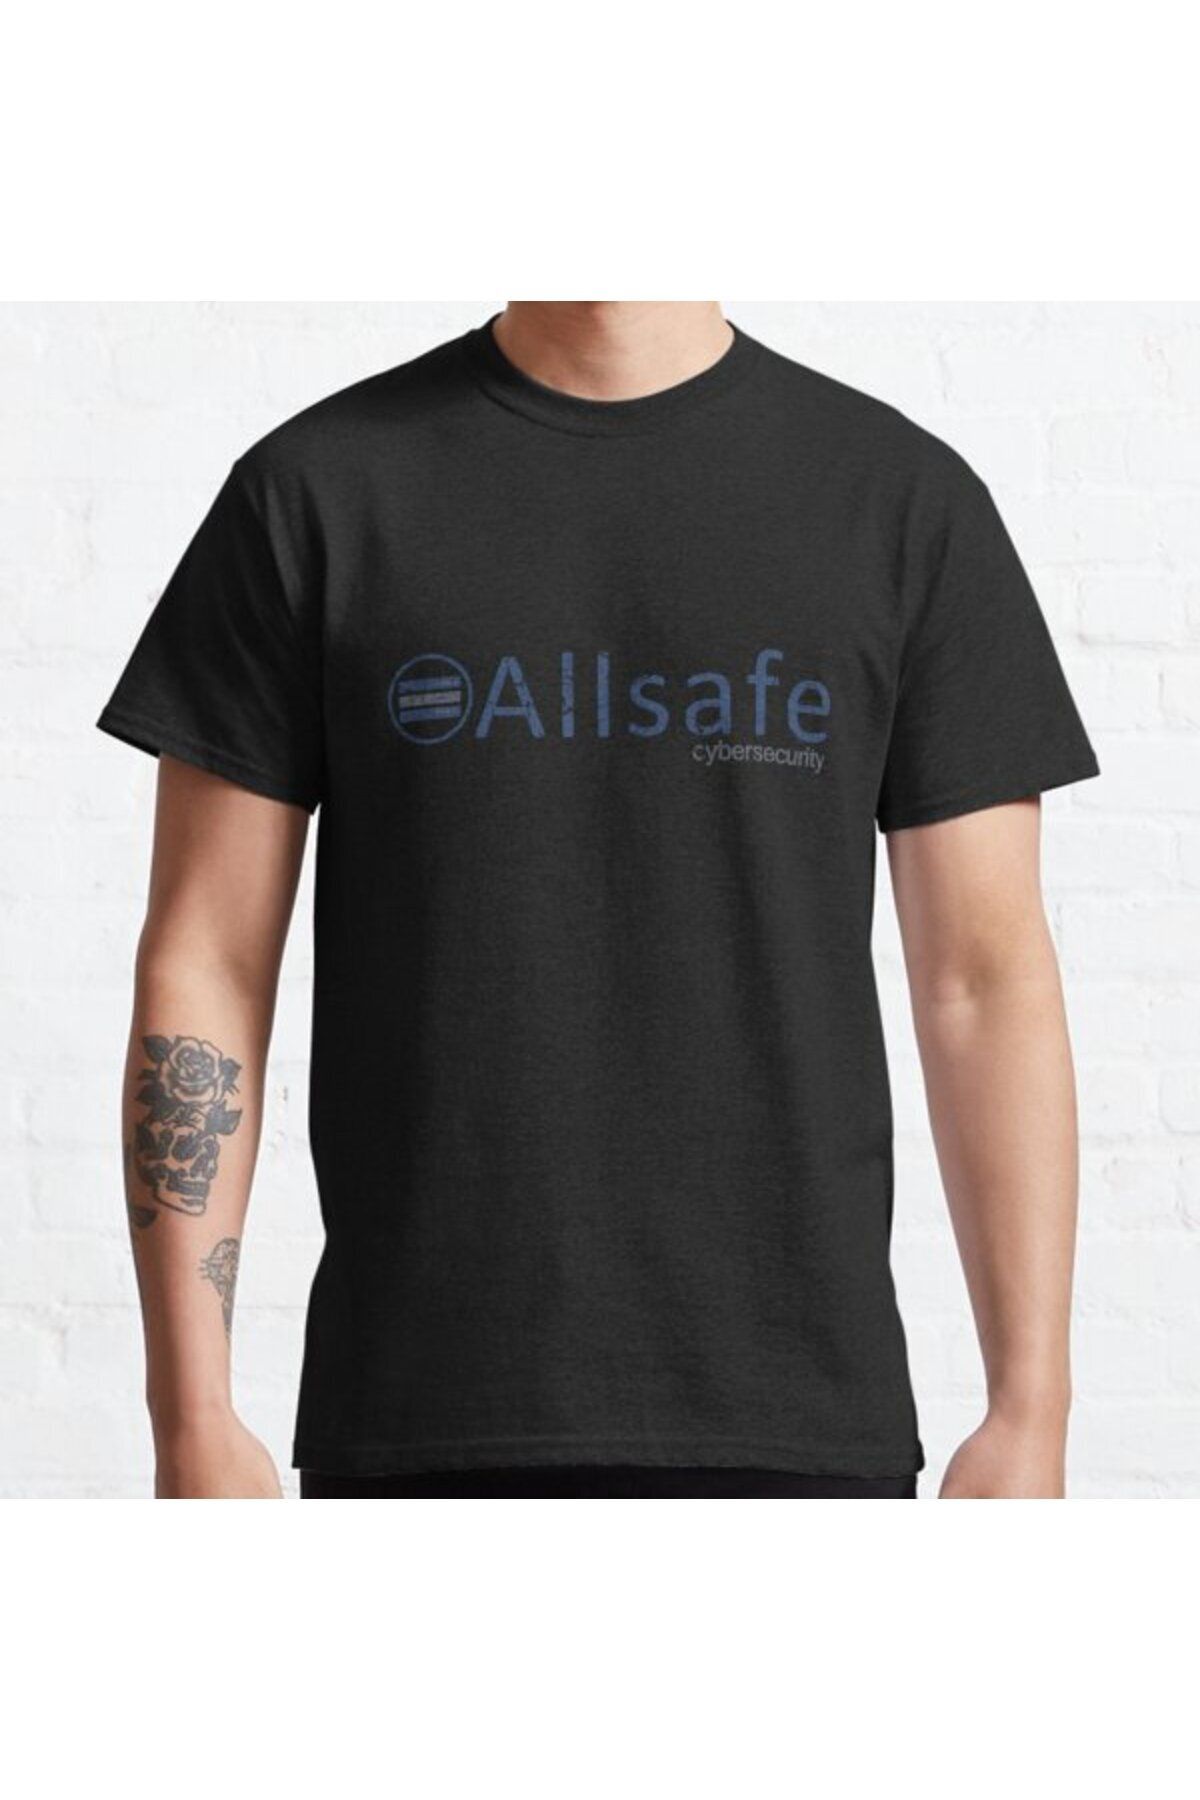 ZOKAWEAR Bol Kalıp Unisex Allsafe Cybersecurity (MR. ROBOT) Tasarım Baskılı Tshirt